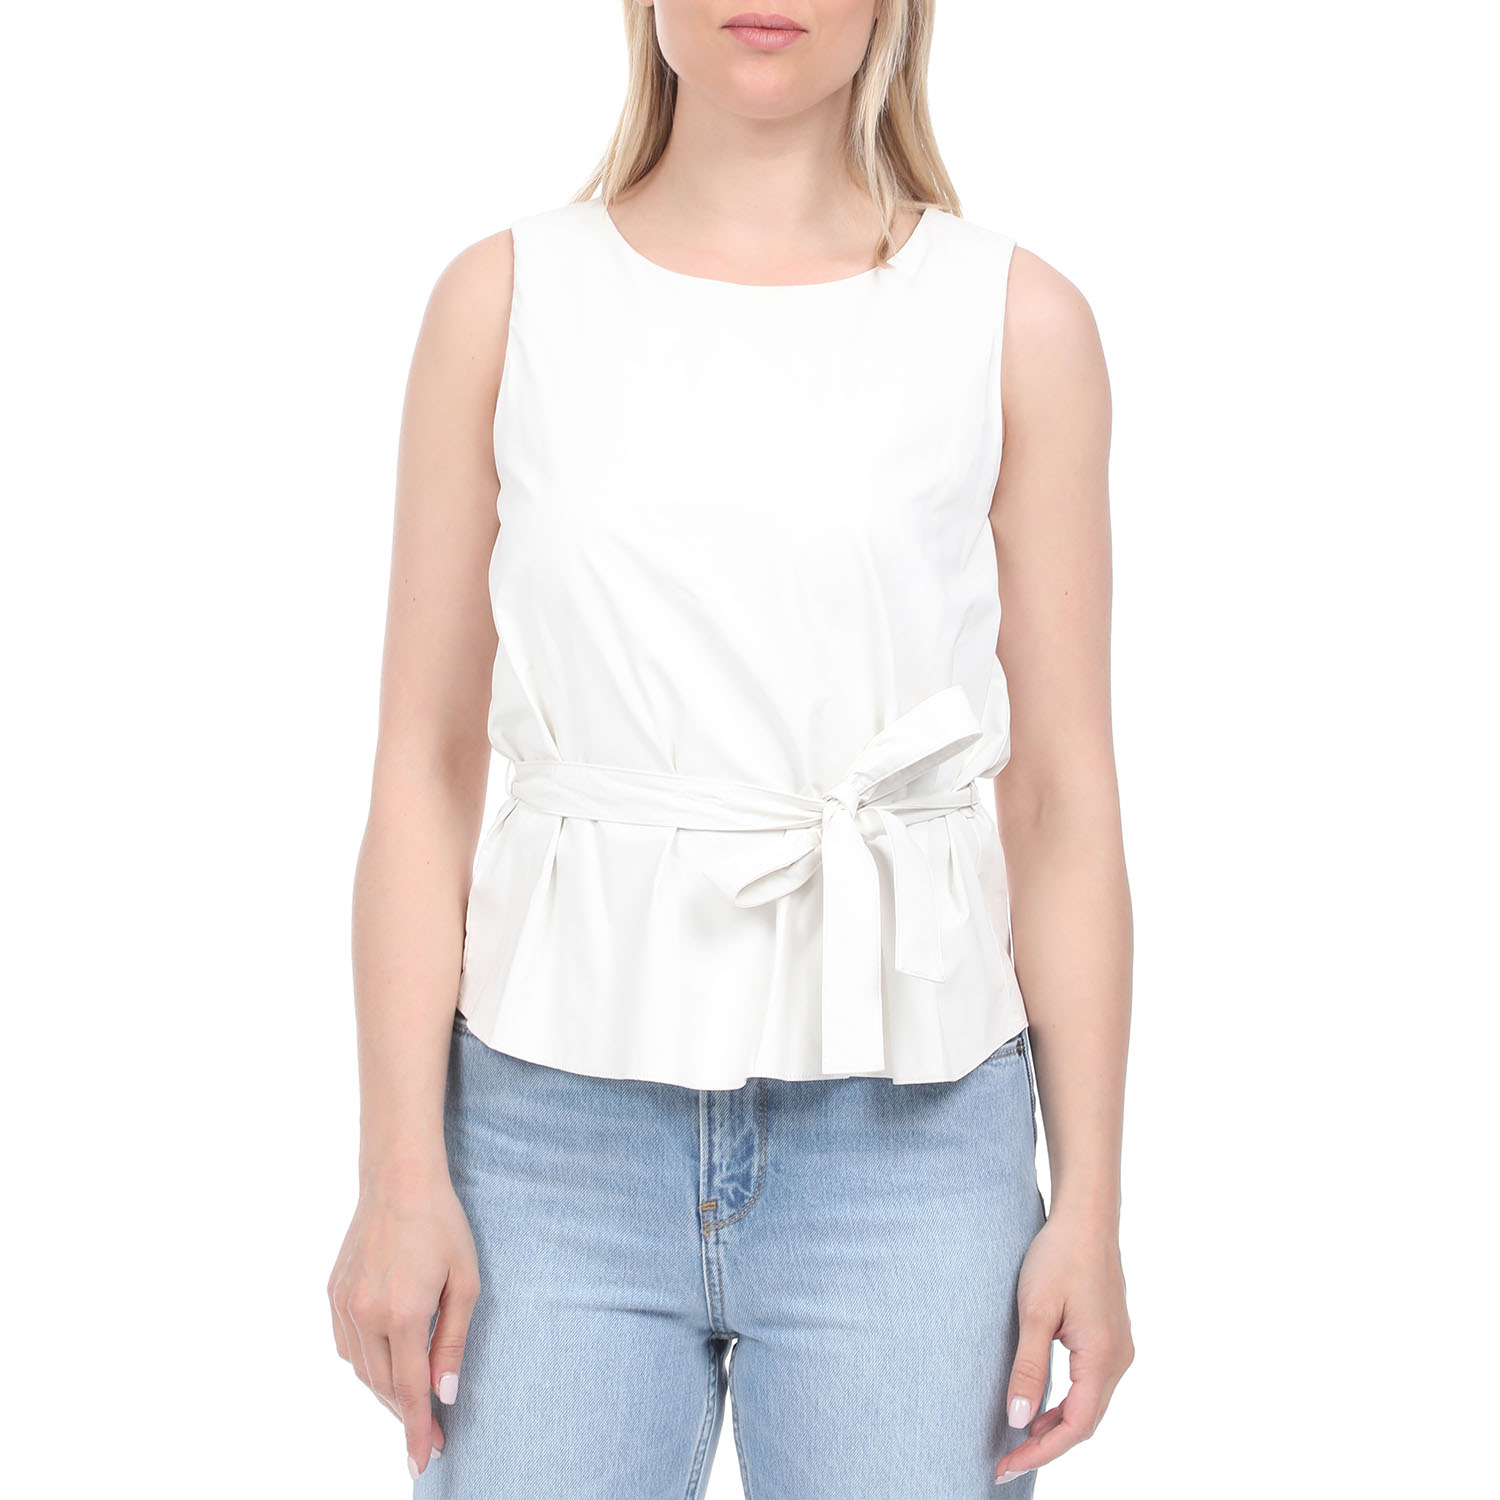 Γυναικεία/Ρούχα/Μπλούζες/Αμάνικες 'ALE - Γυναικεία αμάνικη μπλούζα 'ALE λευκή